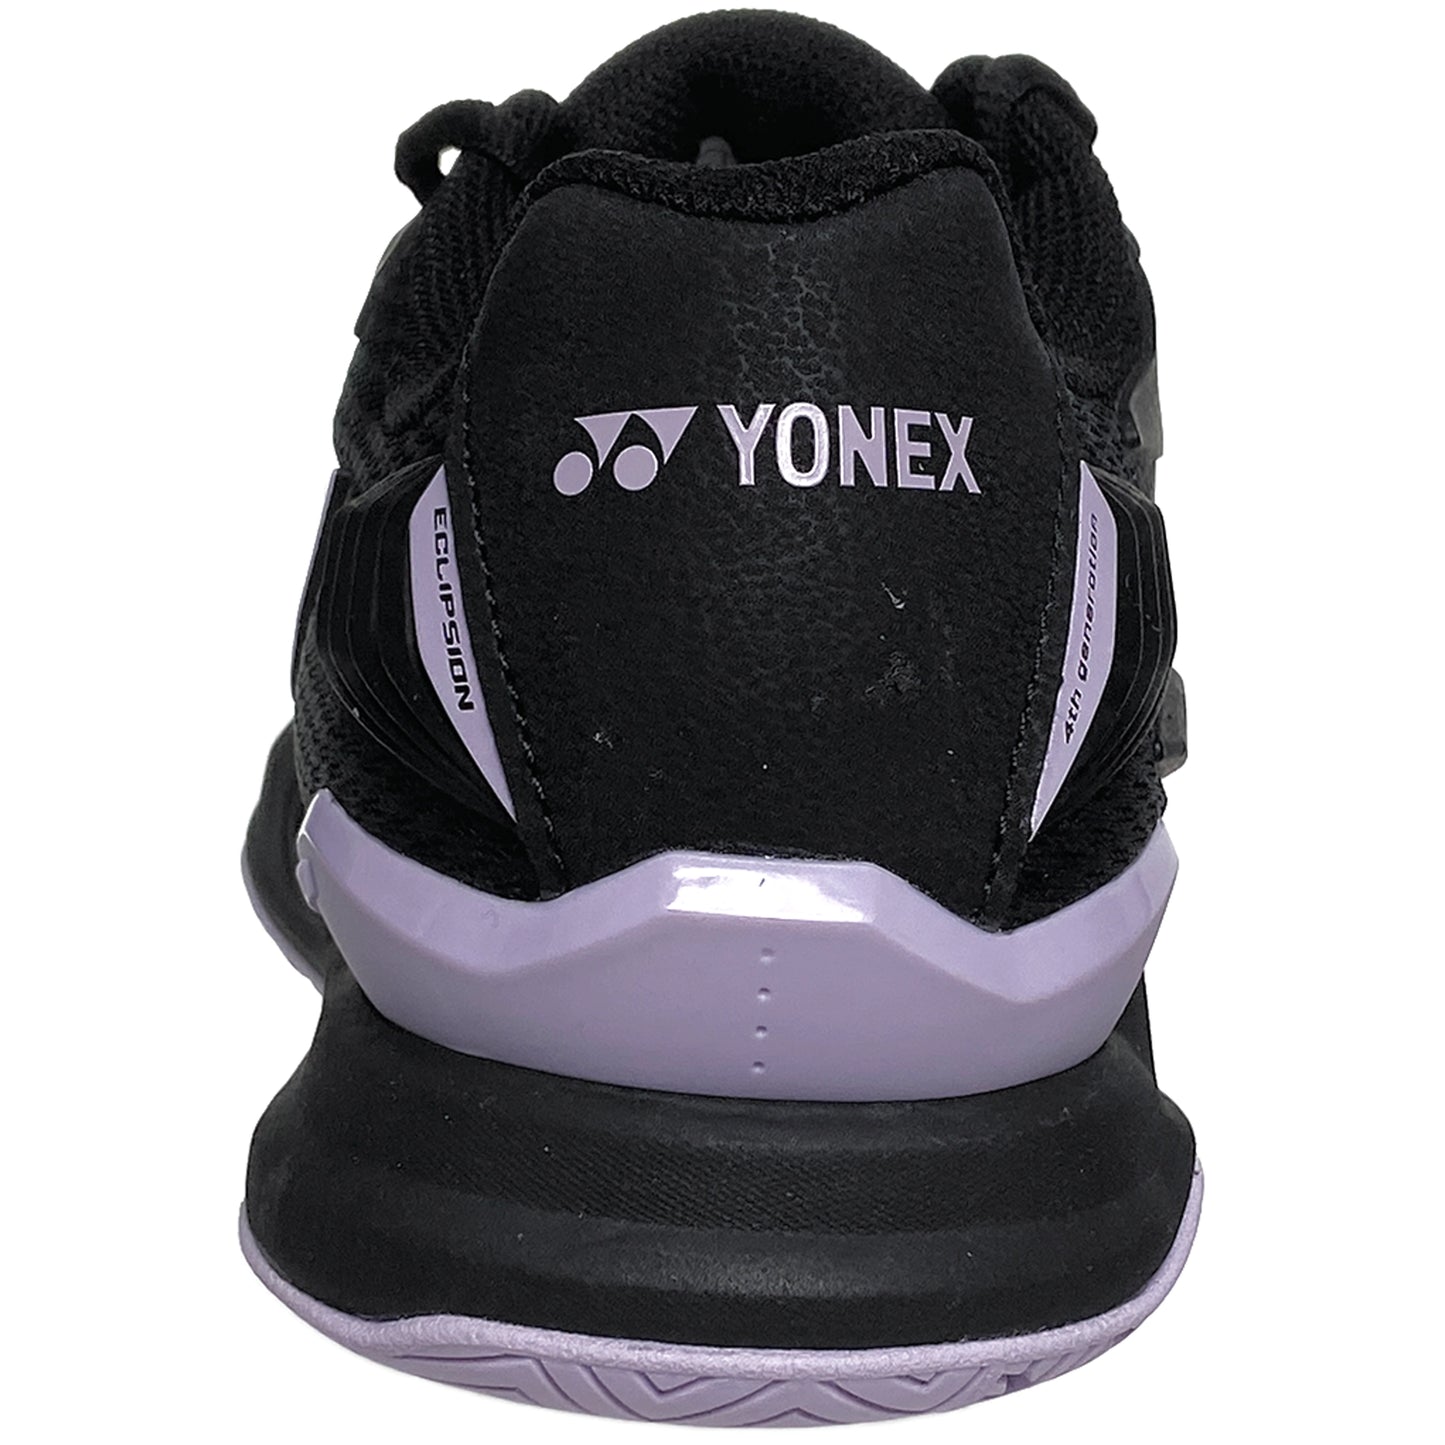 Yonex Homme Power Cushion Eclipsion 4 Noir/Violet